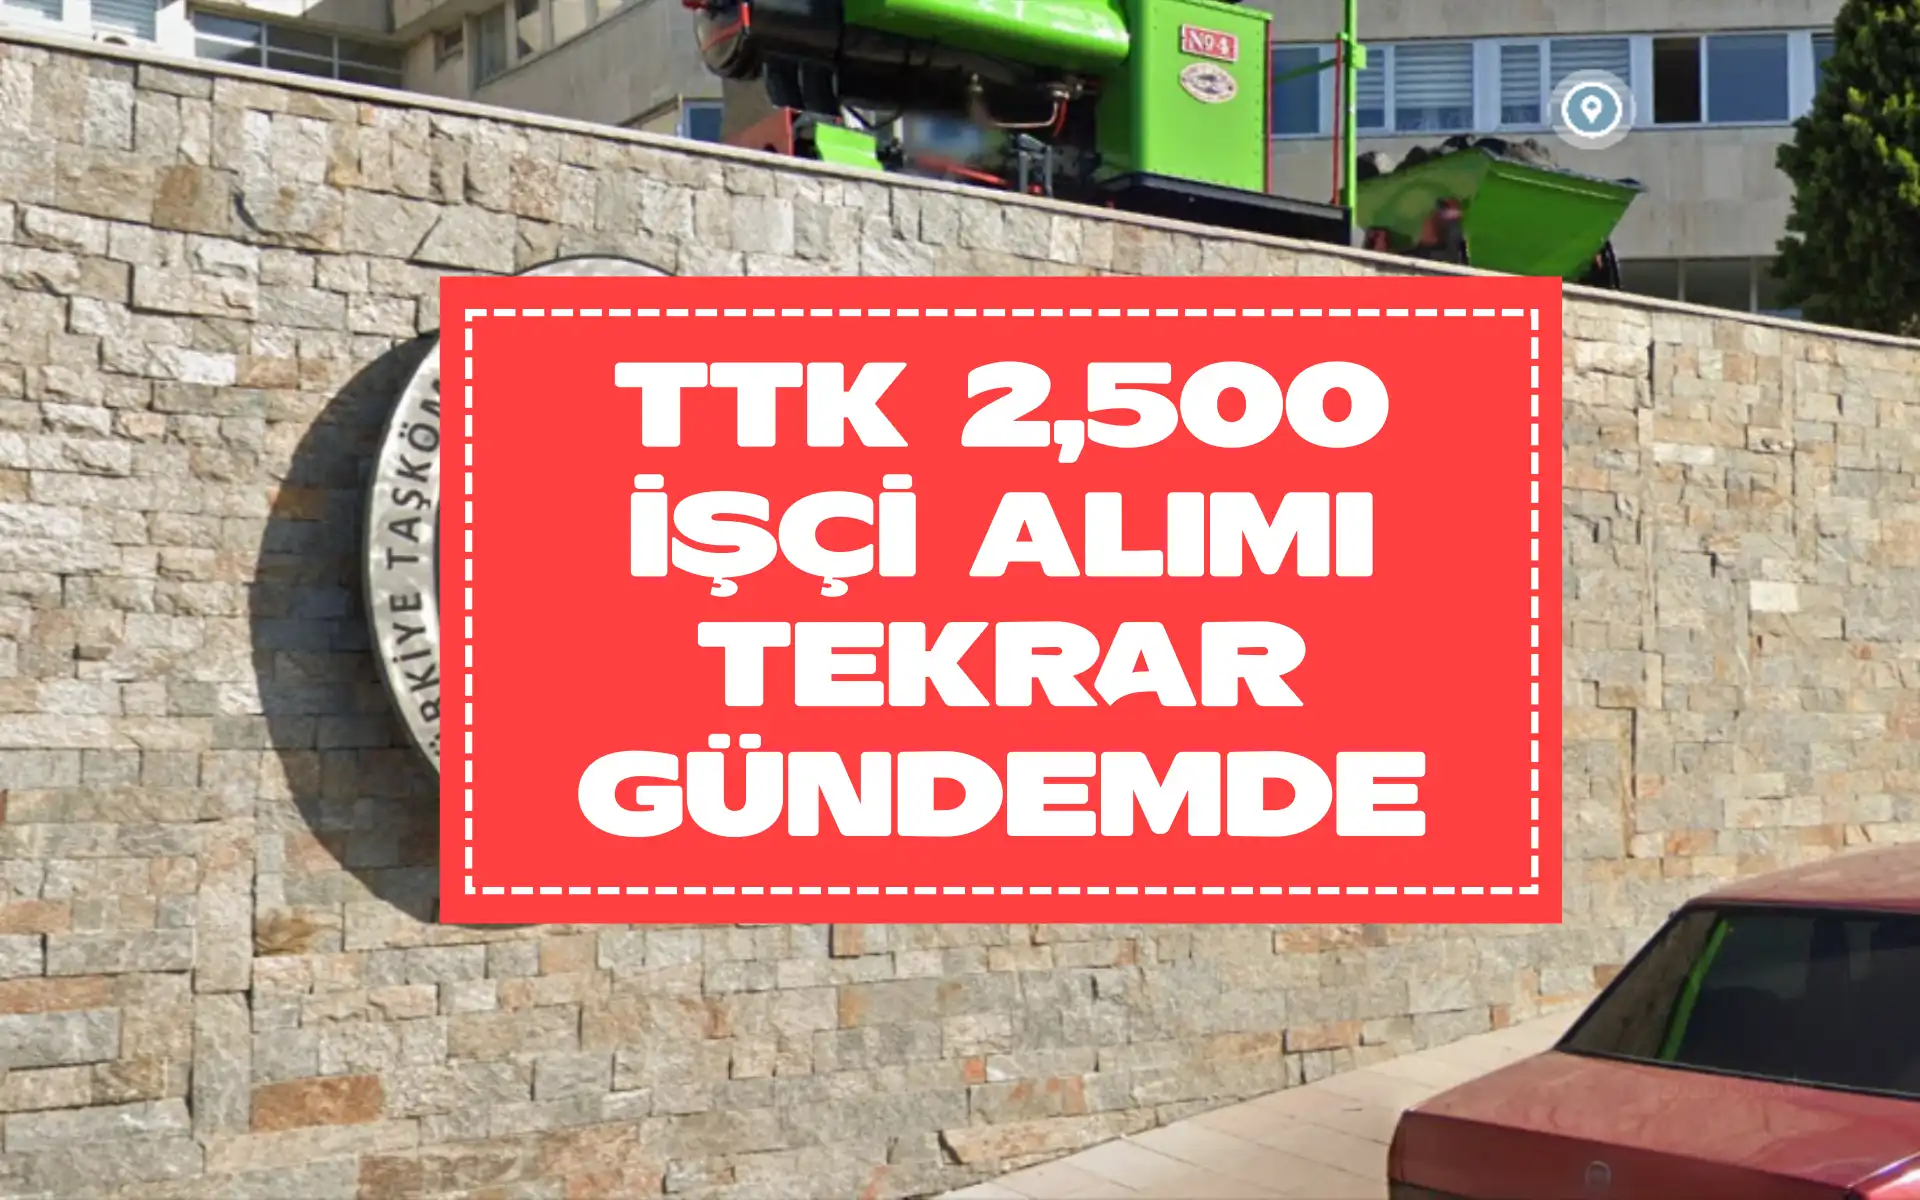 TTK 2,500 işçi alımı tekrar gündemde! Talepler Bakan’a iletildi